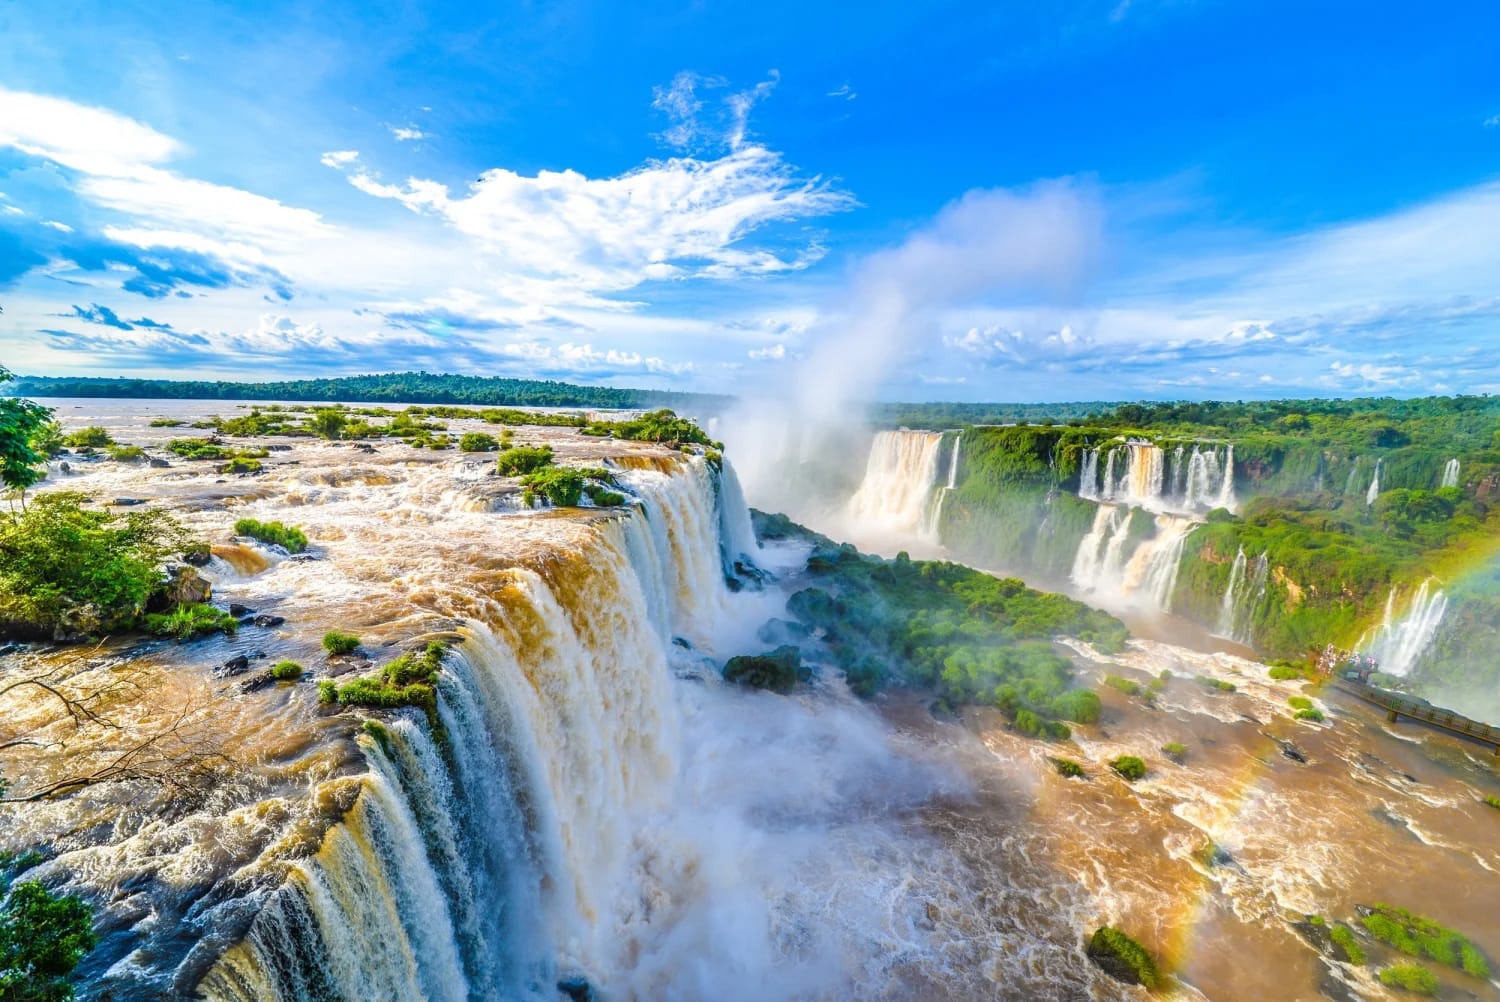 Iguazu Falls (Argentinian side)